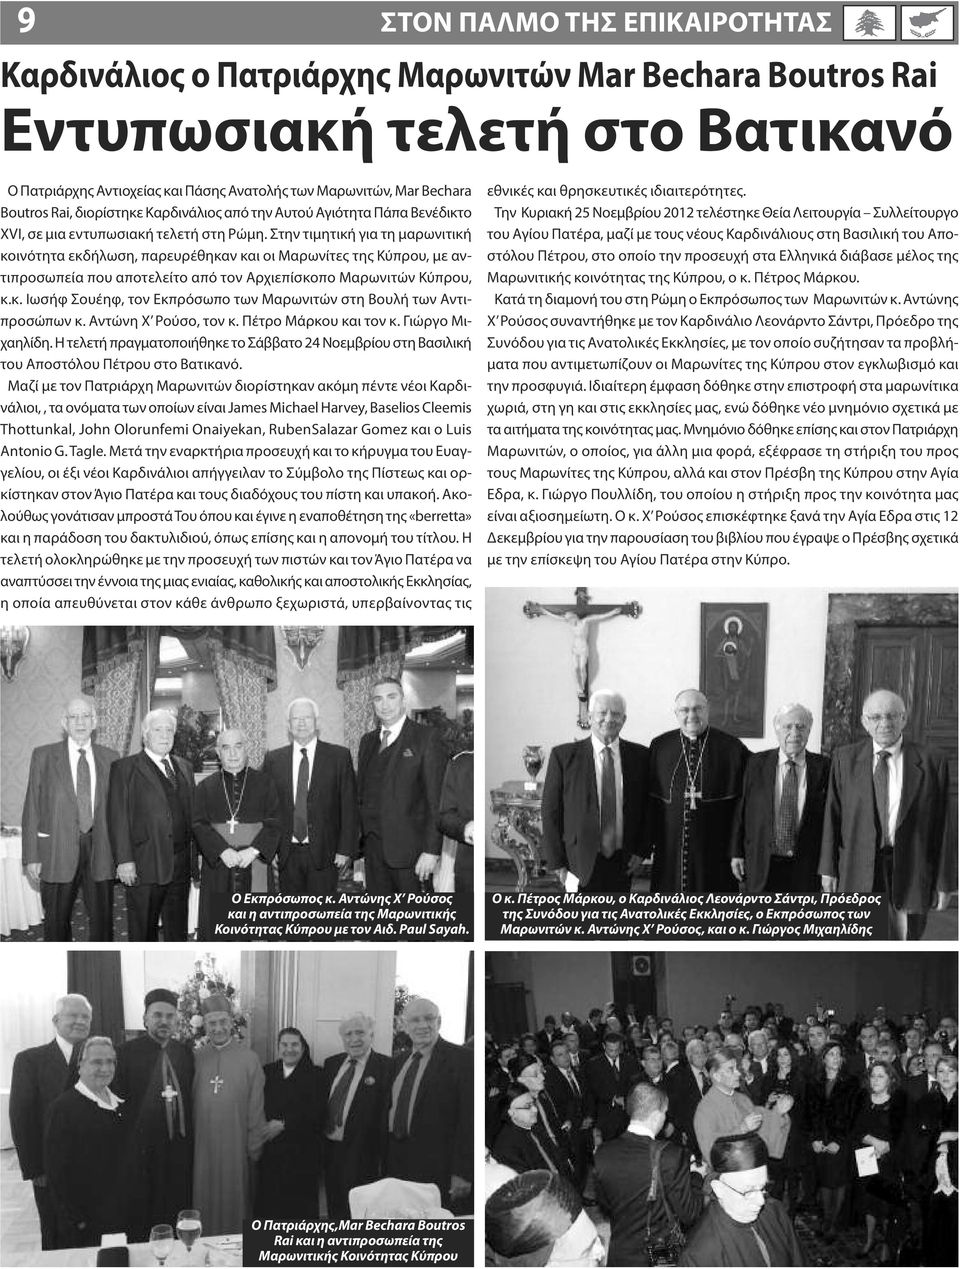 Στην τιμητική για τη μαρωνιτική κοινότητα εκδήλωση, παρευρέθηκαν και οι Μαρωνίτες της Κύπρου, με αντιπροσωπεία που αποτελείτο από τον Αρχιεπίσκοπο Μαρωνιτών Κύπρου, κ.κ. Ιωσήφ Σουέηφ, τον Εκπρόσωπο των Μαρωνιτών στη Βουλή των Αντιπροσώπων κ.